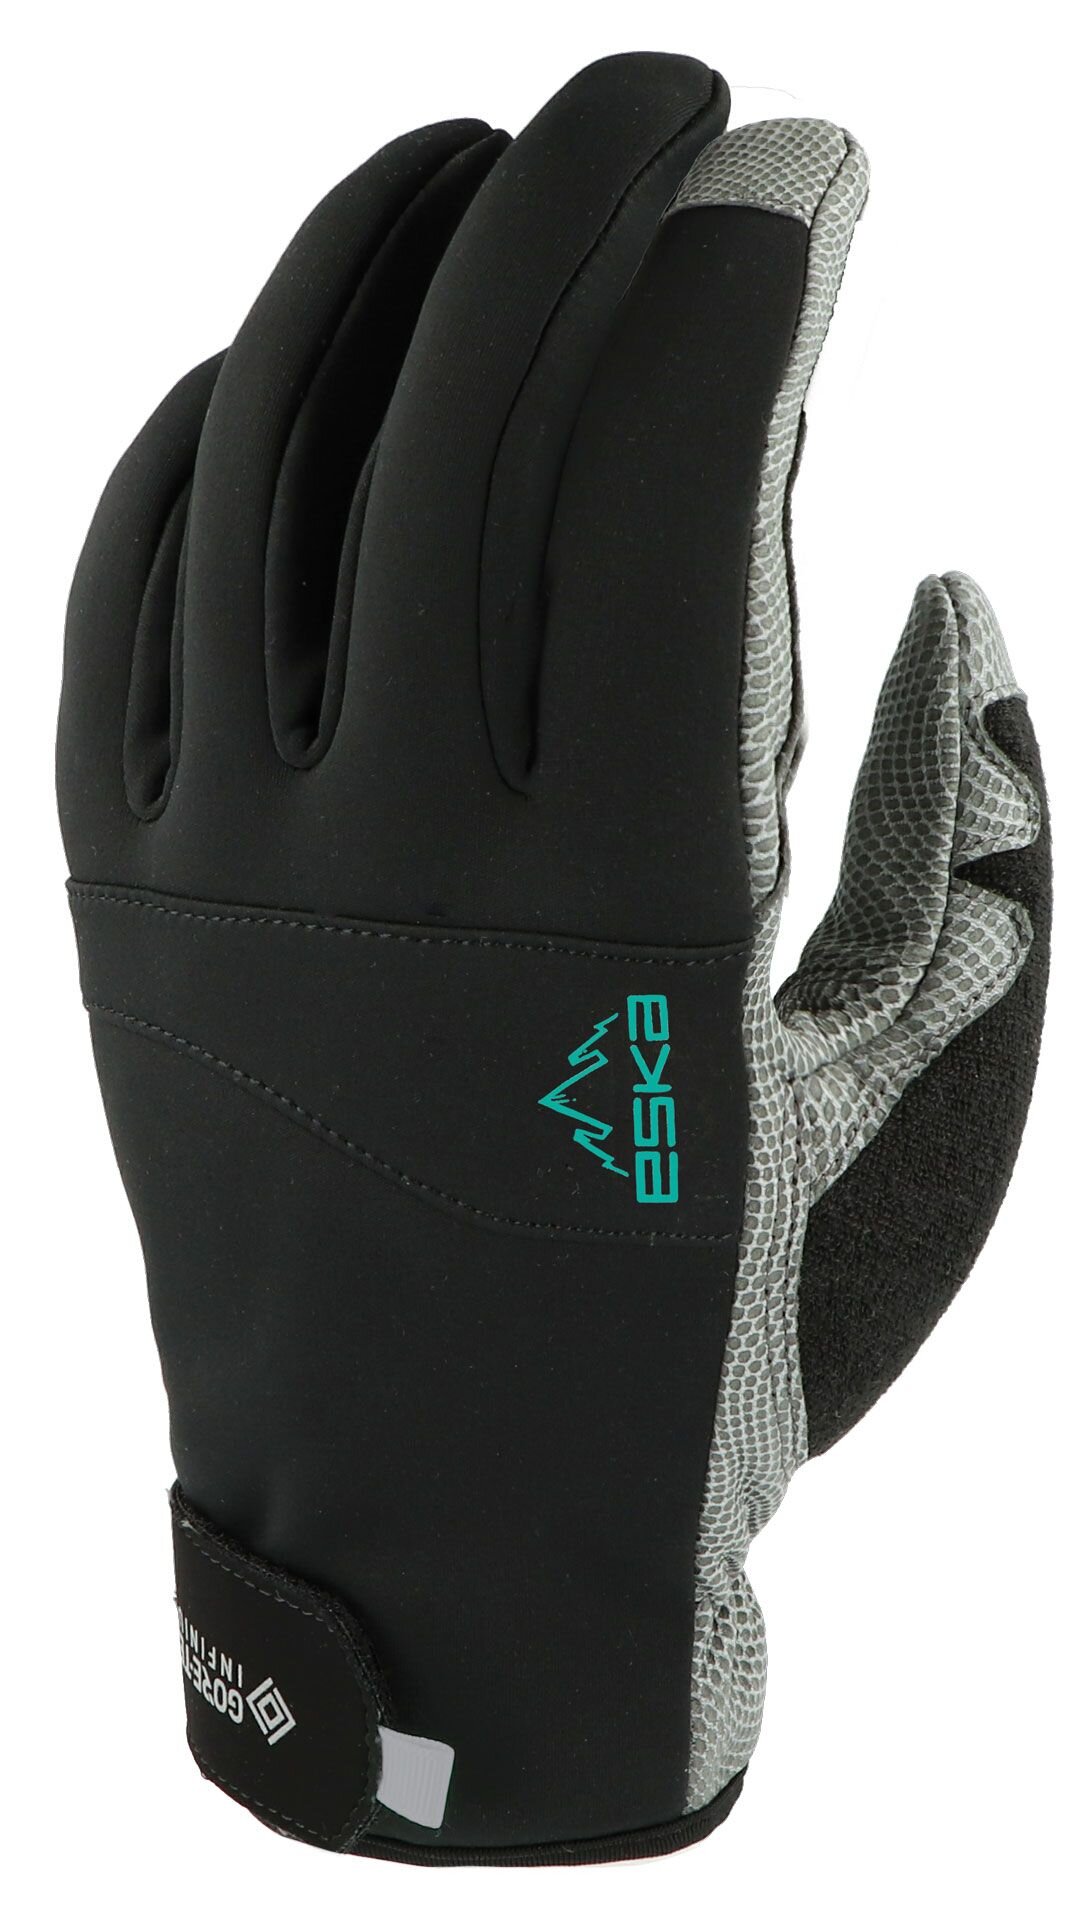 Multifunctional winter gloves Eska Pulse Transalp